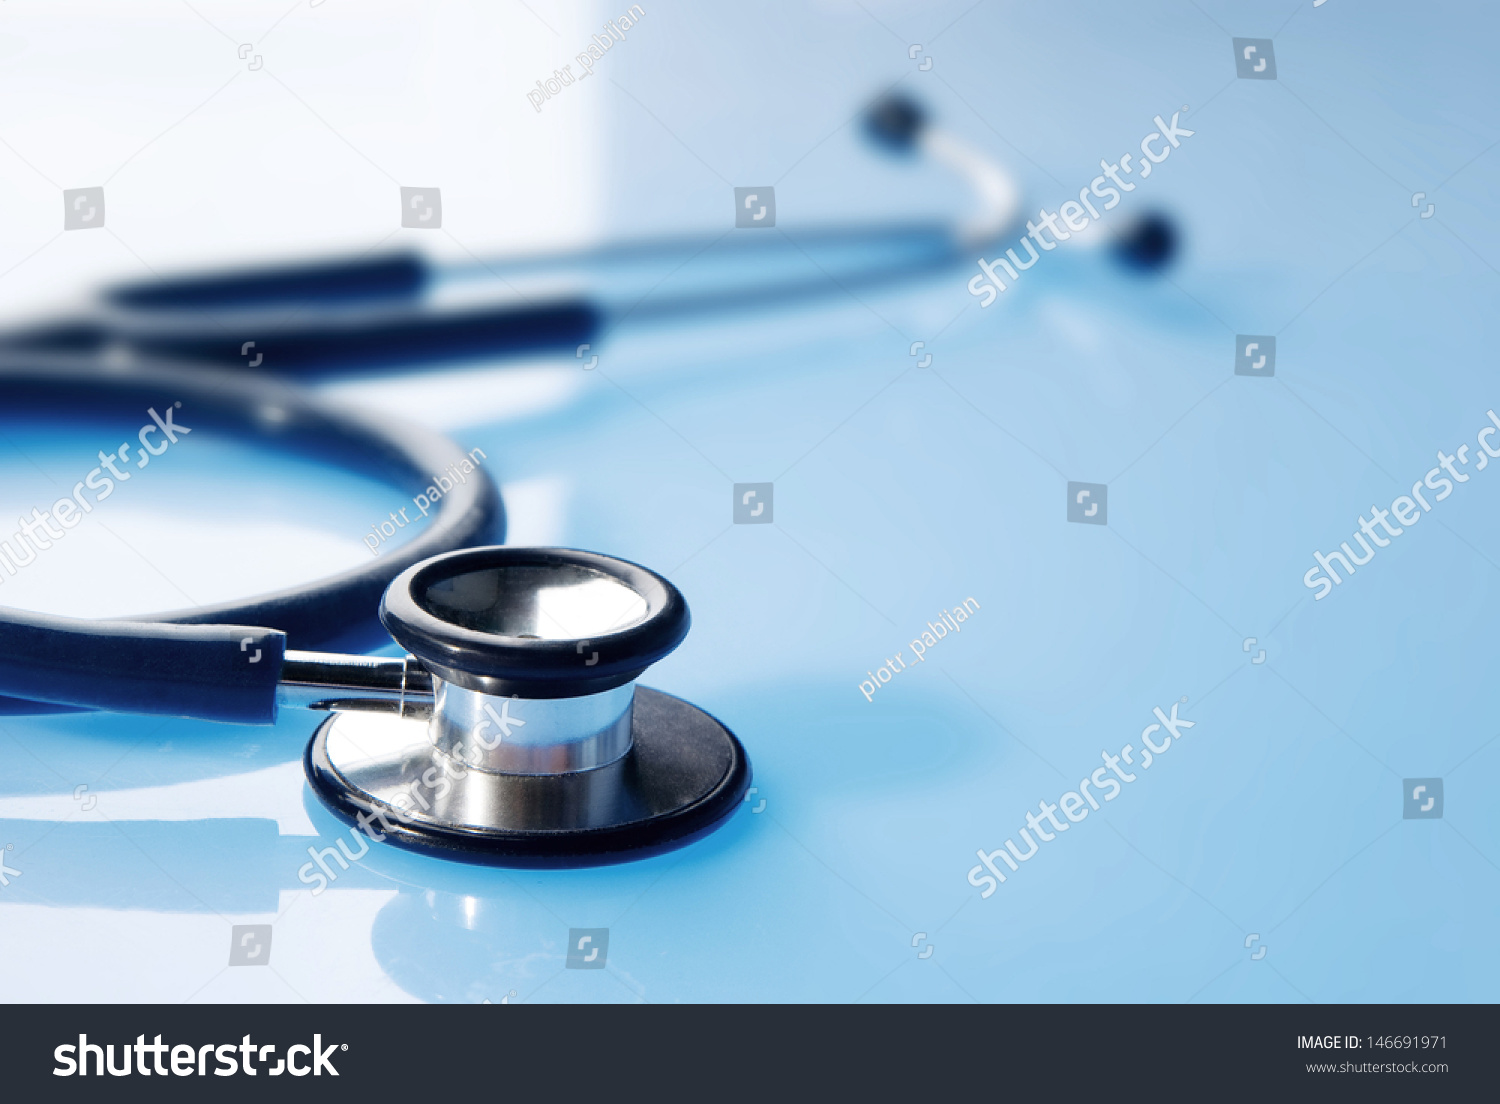 Stethoscope On Blue Reflective Background Stock Photo 1500x1104